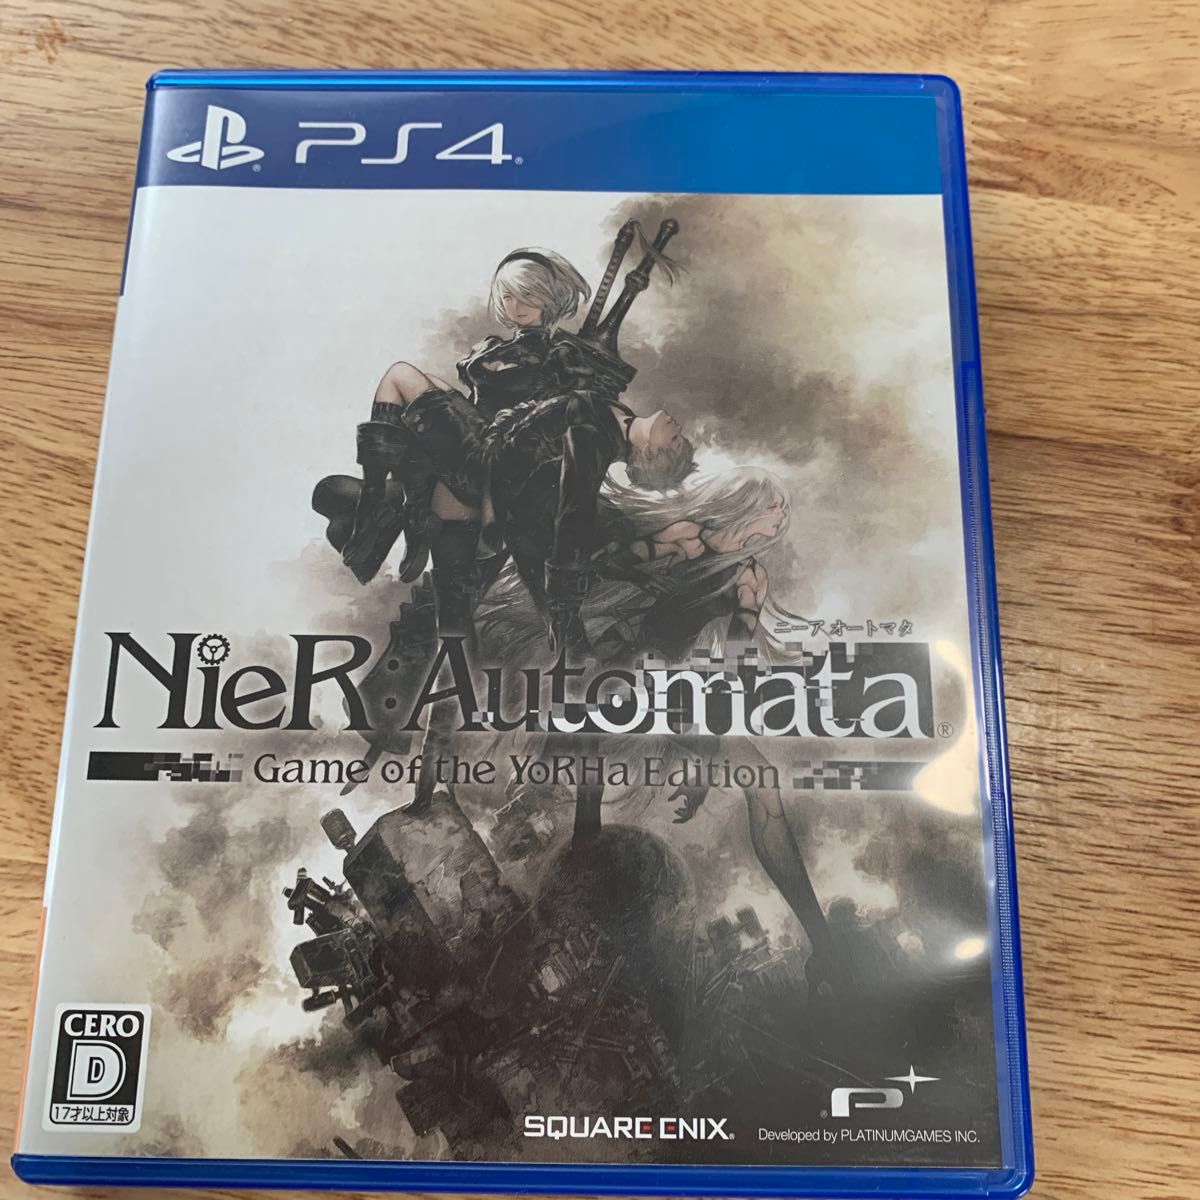 【PS4】 NieR:Automata [ゲーム オブ ザ ヨルハ エディション]